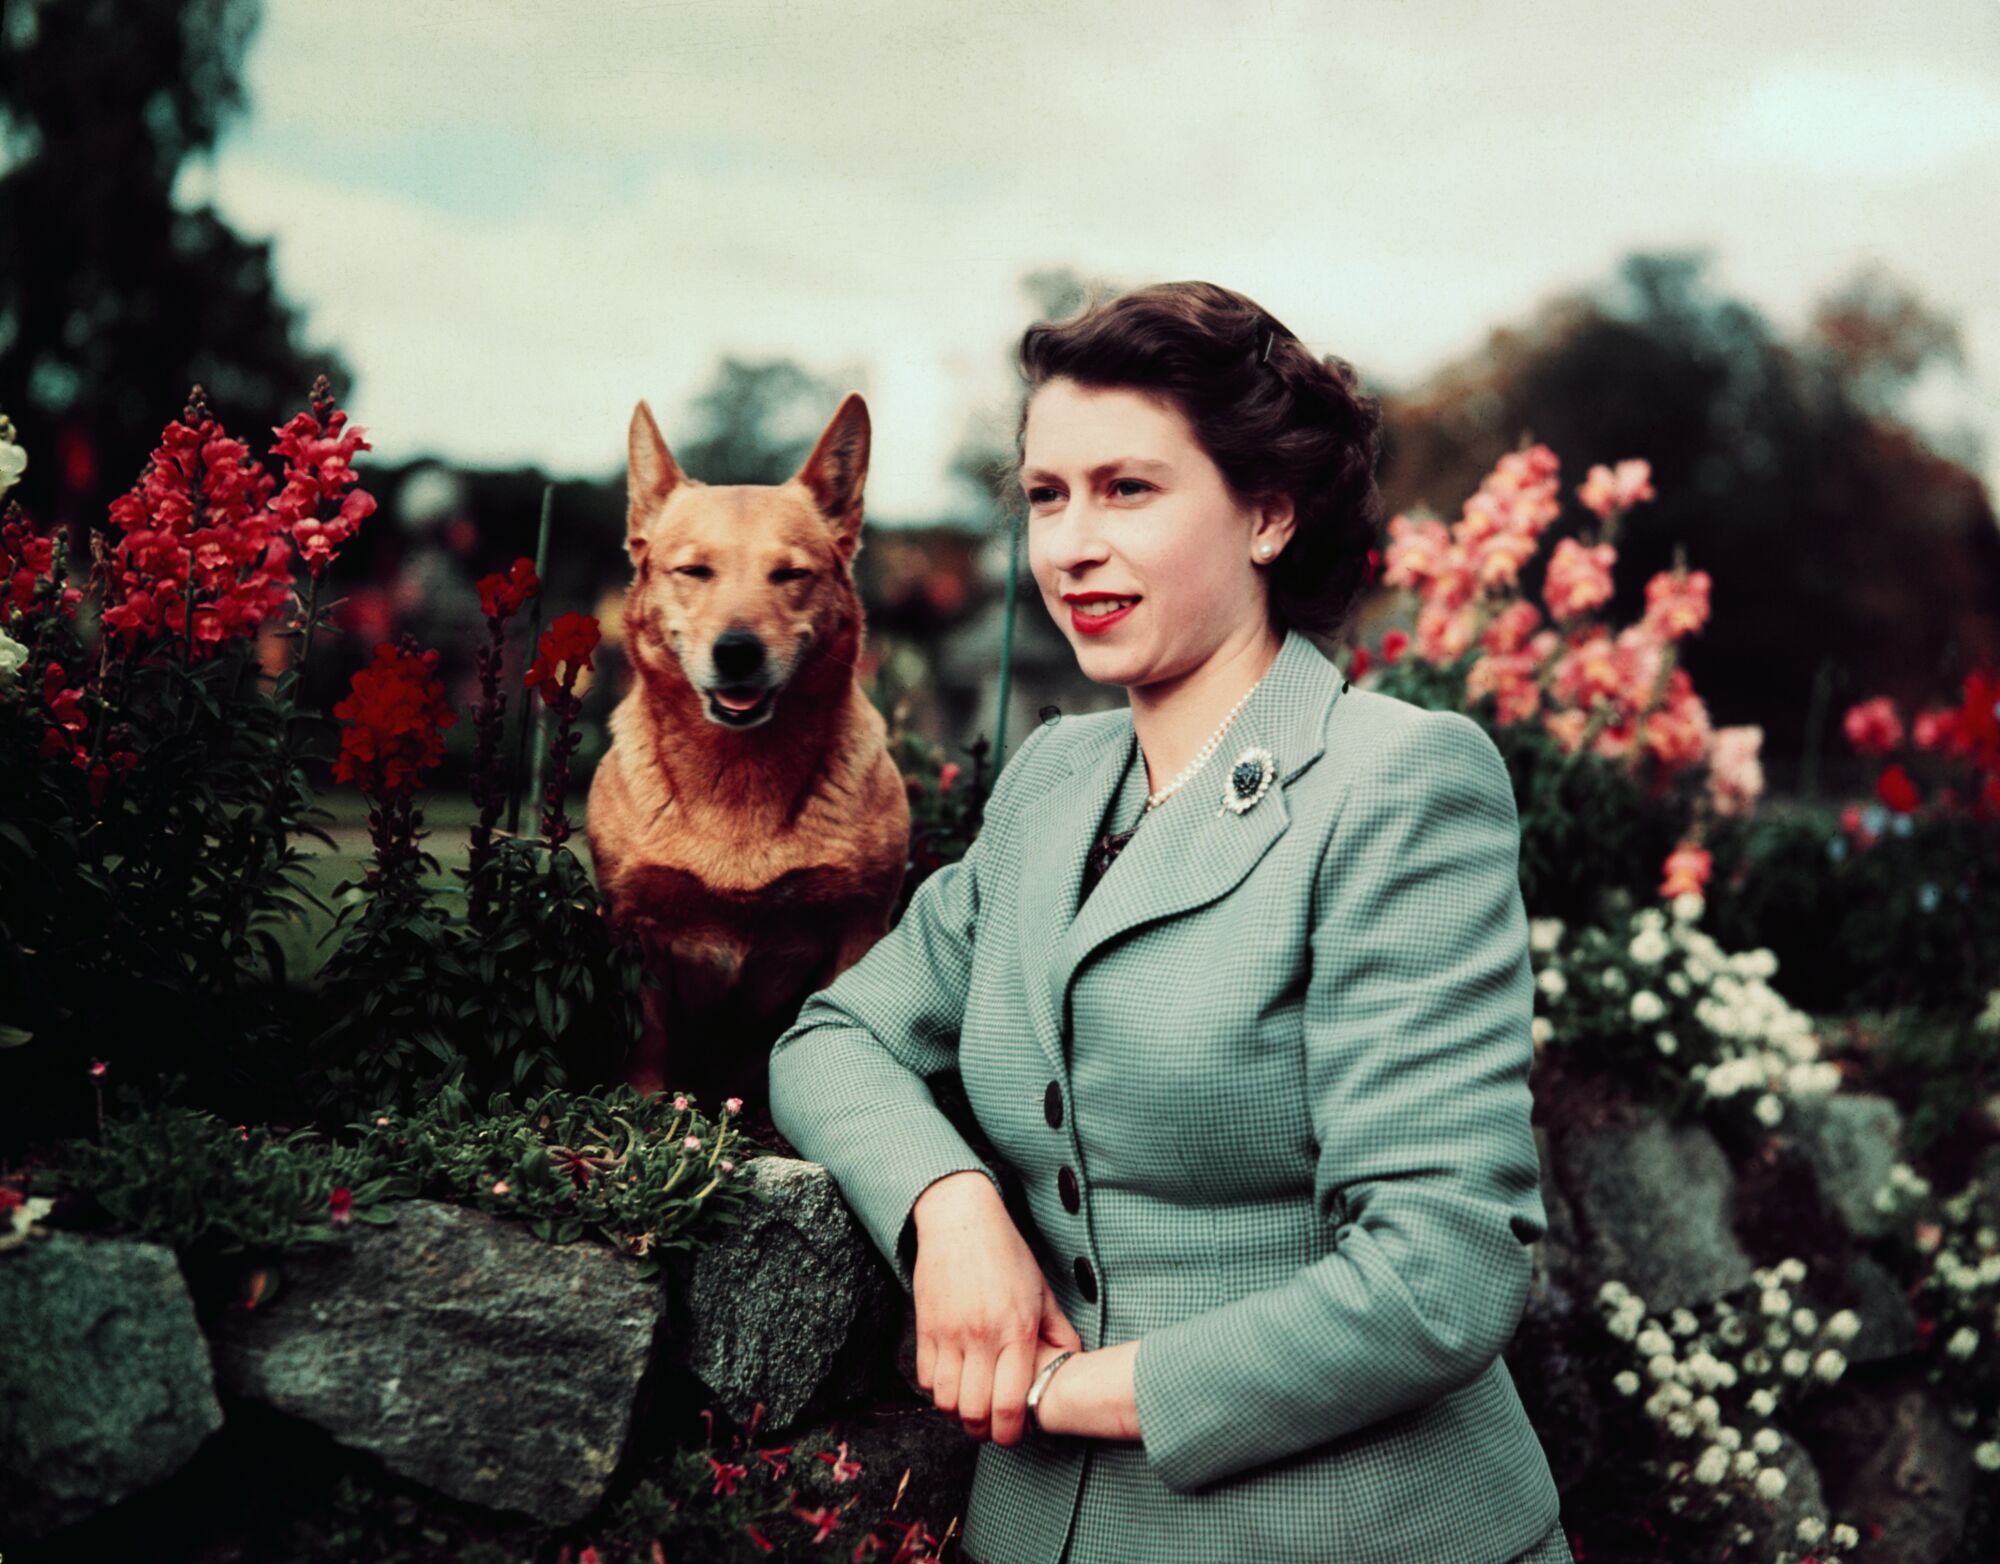 ملکه الیزابت دوم در سپتامبر 1952 با یکی از کورگی های محبوبش در کنار گل ها ژست می گیرد.